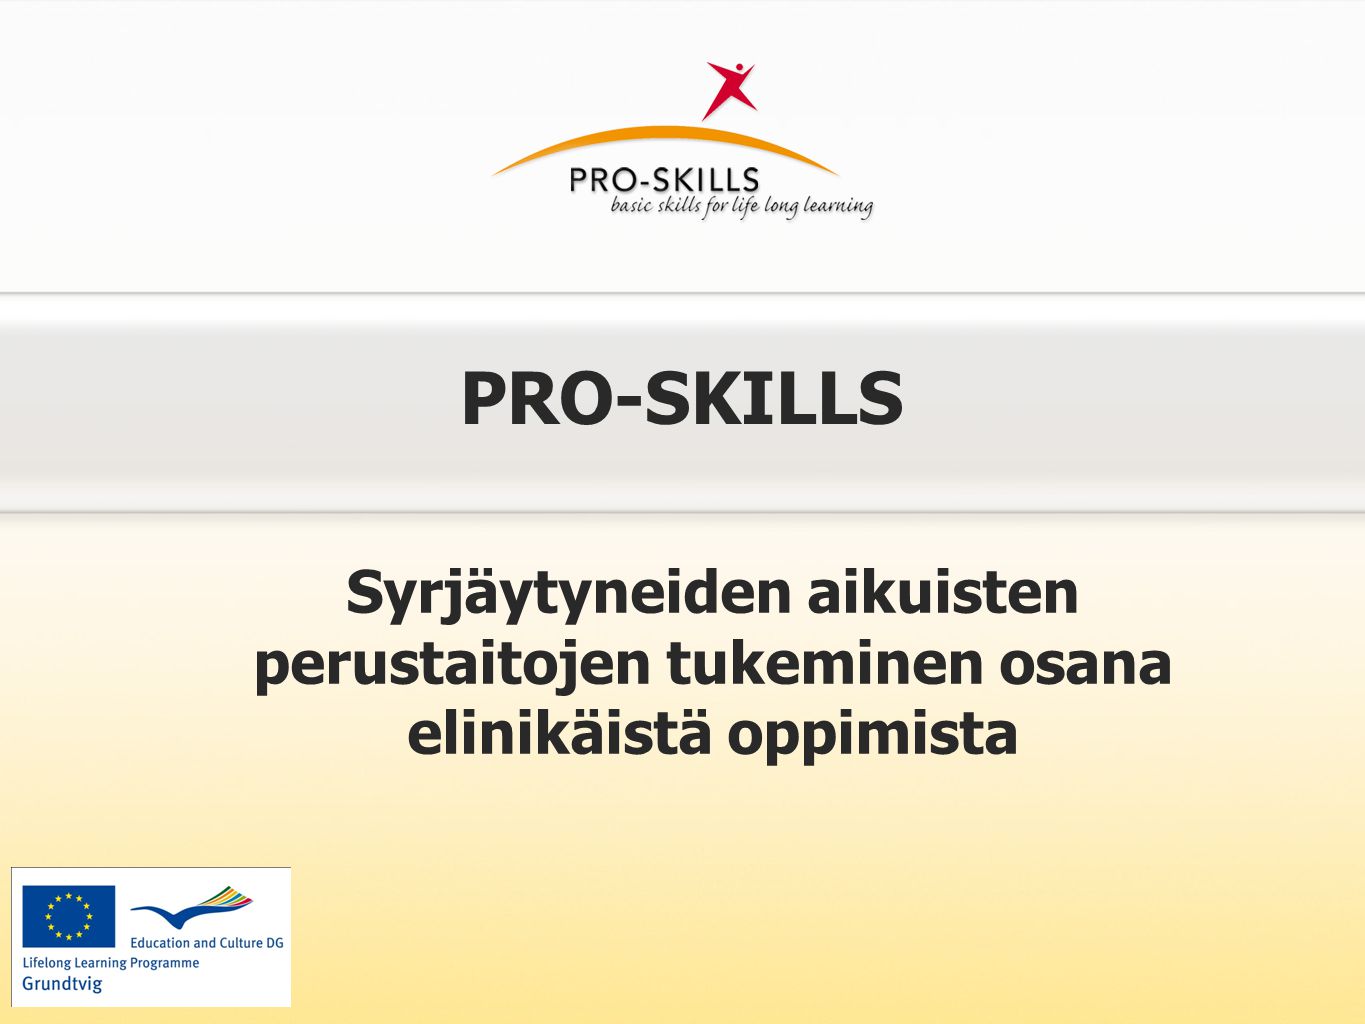 Taustaa: MIKSI Pro-Skills